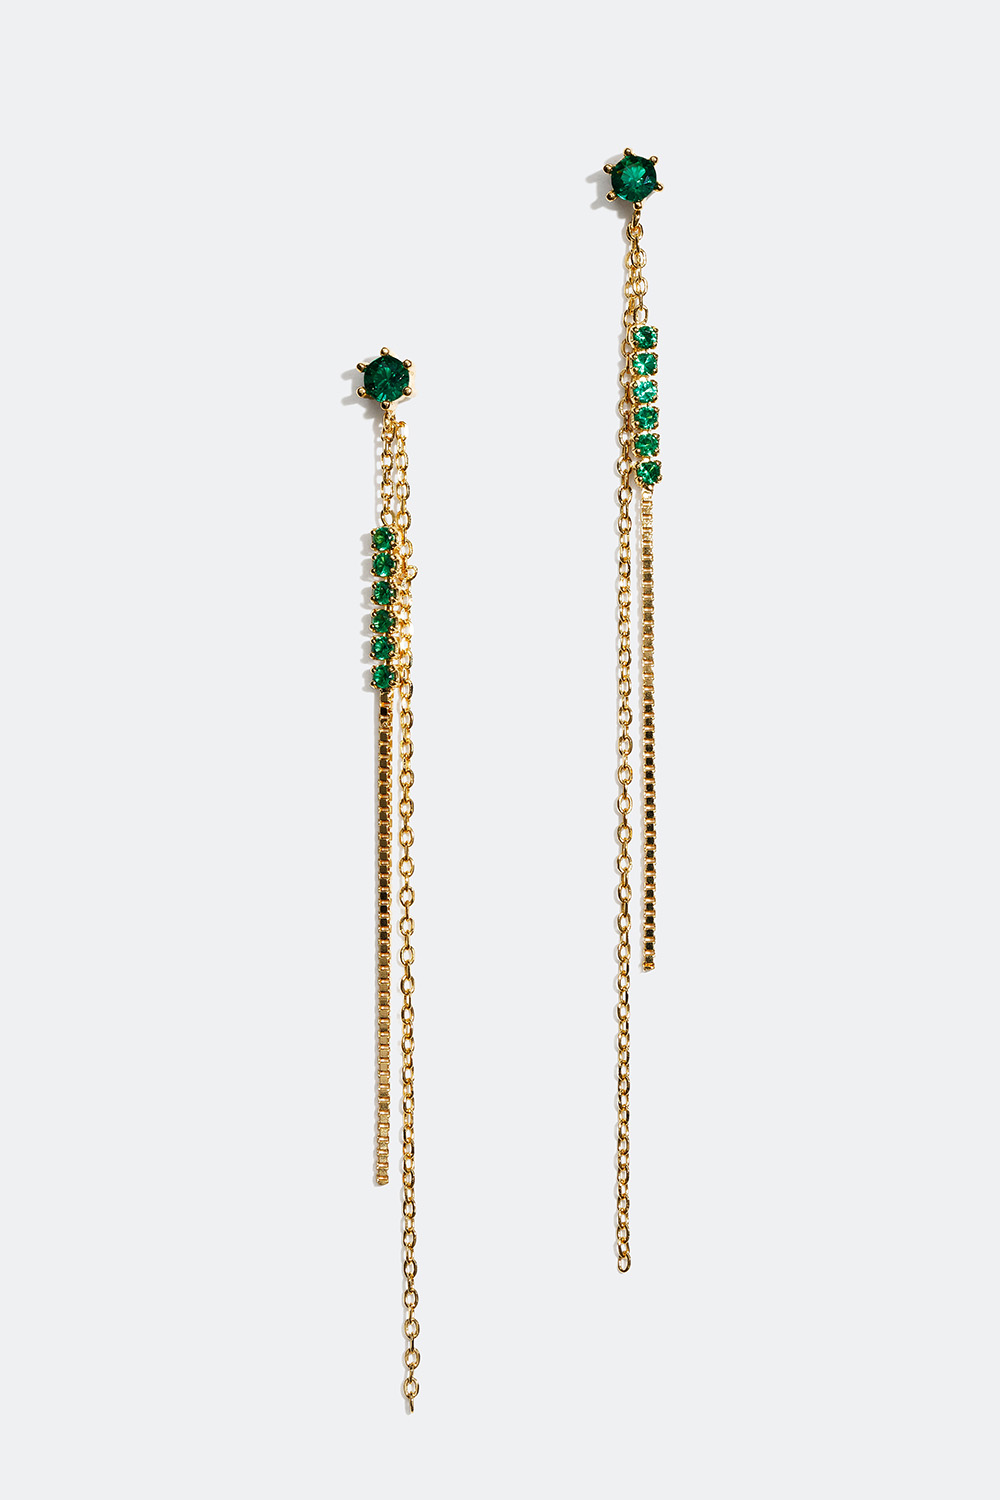 Pitkät korvakorut, joissa 18 karaatin kultaus ja ketjuja ja vihreitä kiviä ryhmässä Korut / Korvakorut @ Glitter (553002157702)